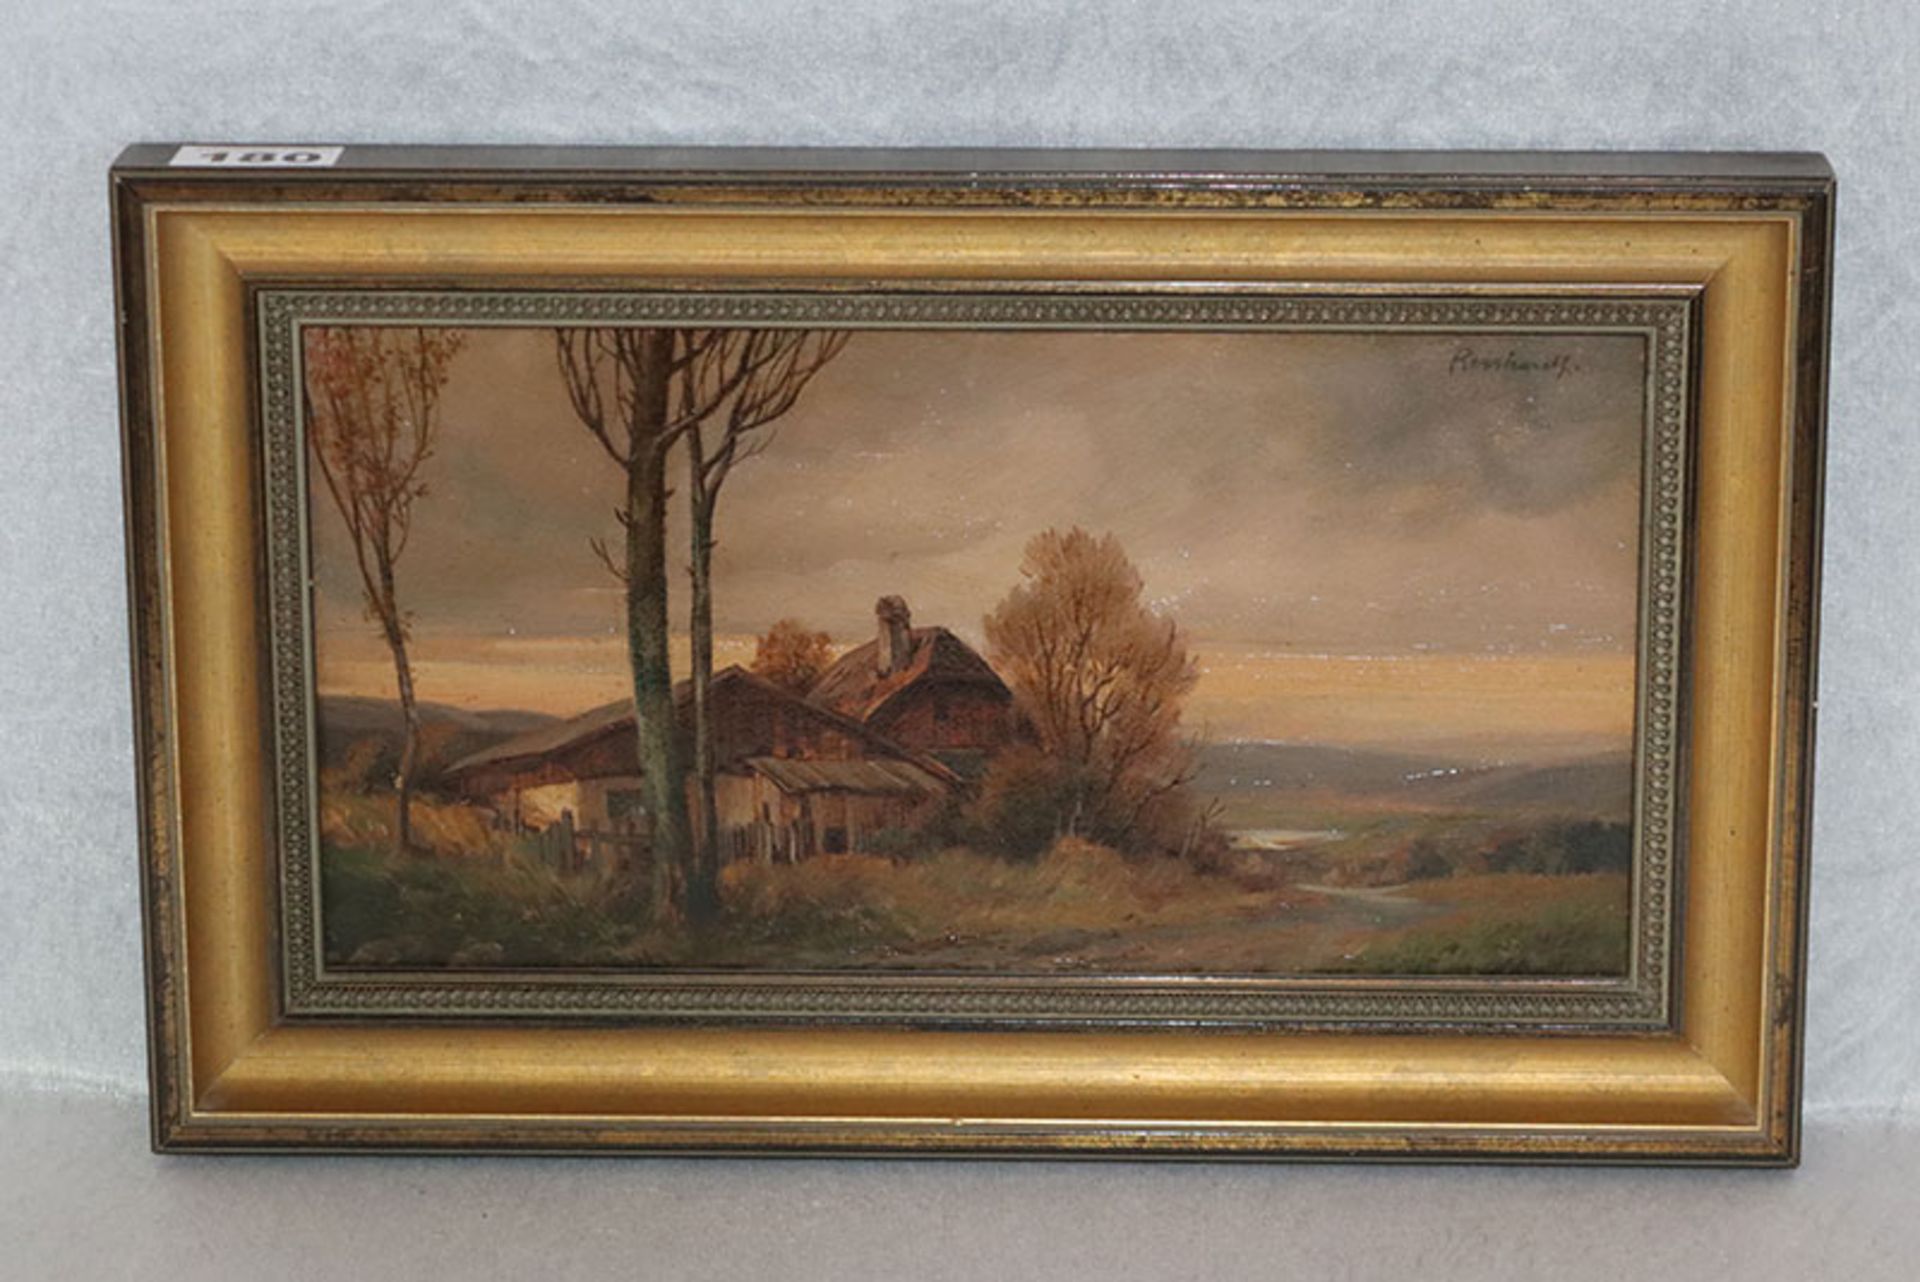 Gemälde ÖL/Malkarton 'Landschafts-Szenerie mit Haus', signiert Reinhardt, gerahmt, Rahmen